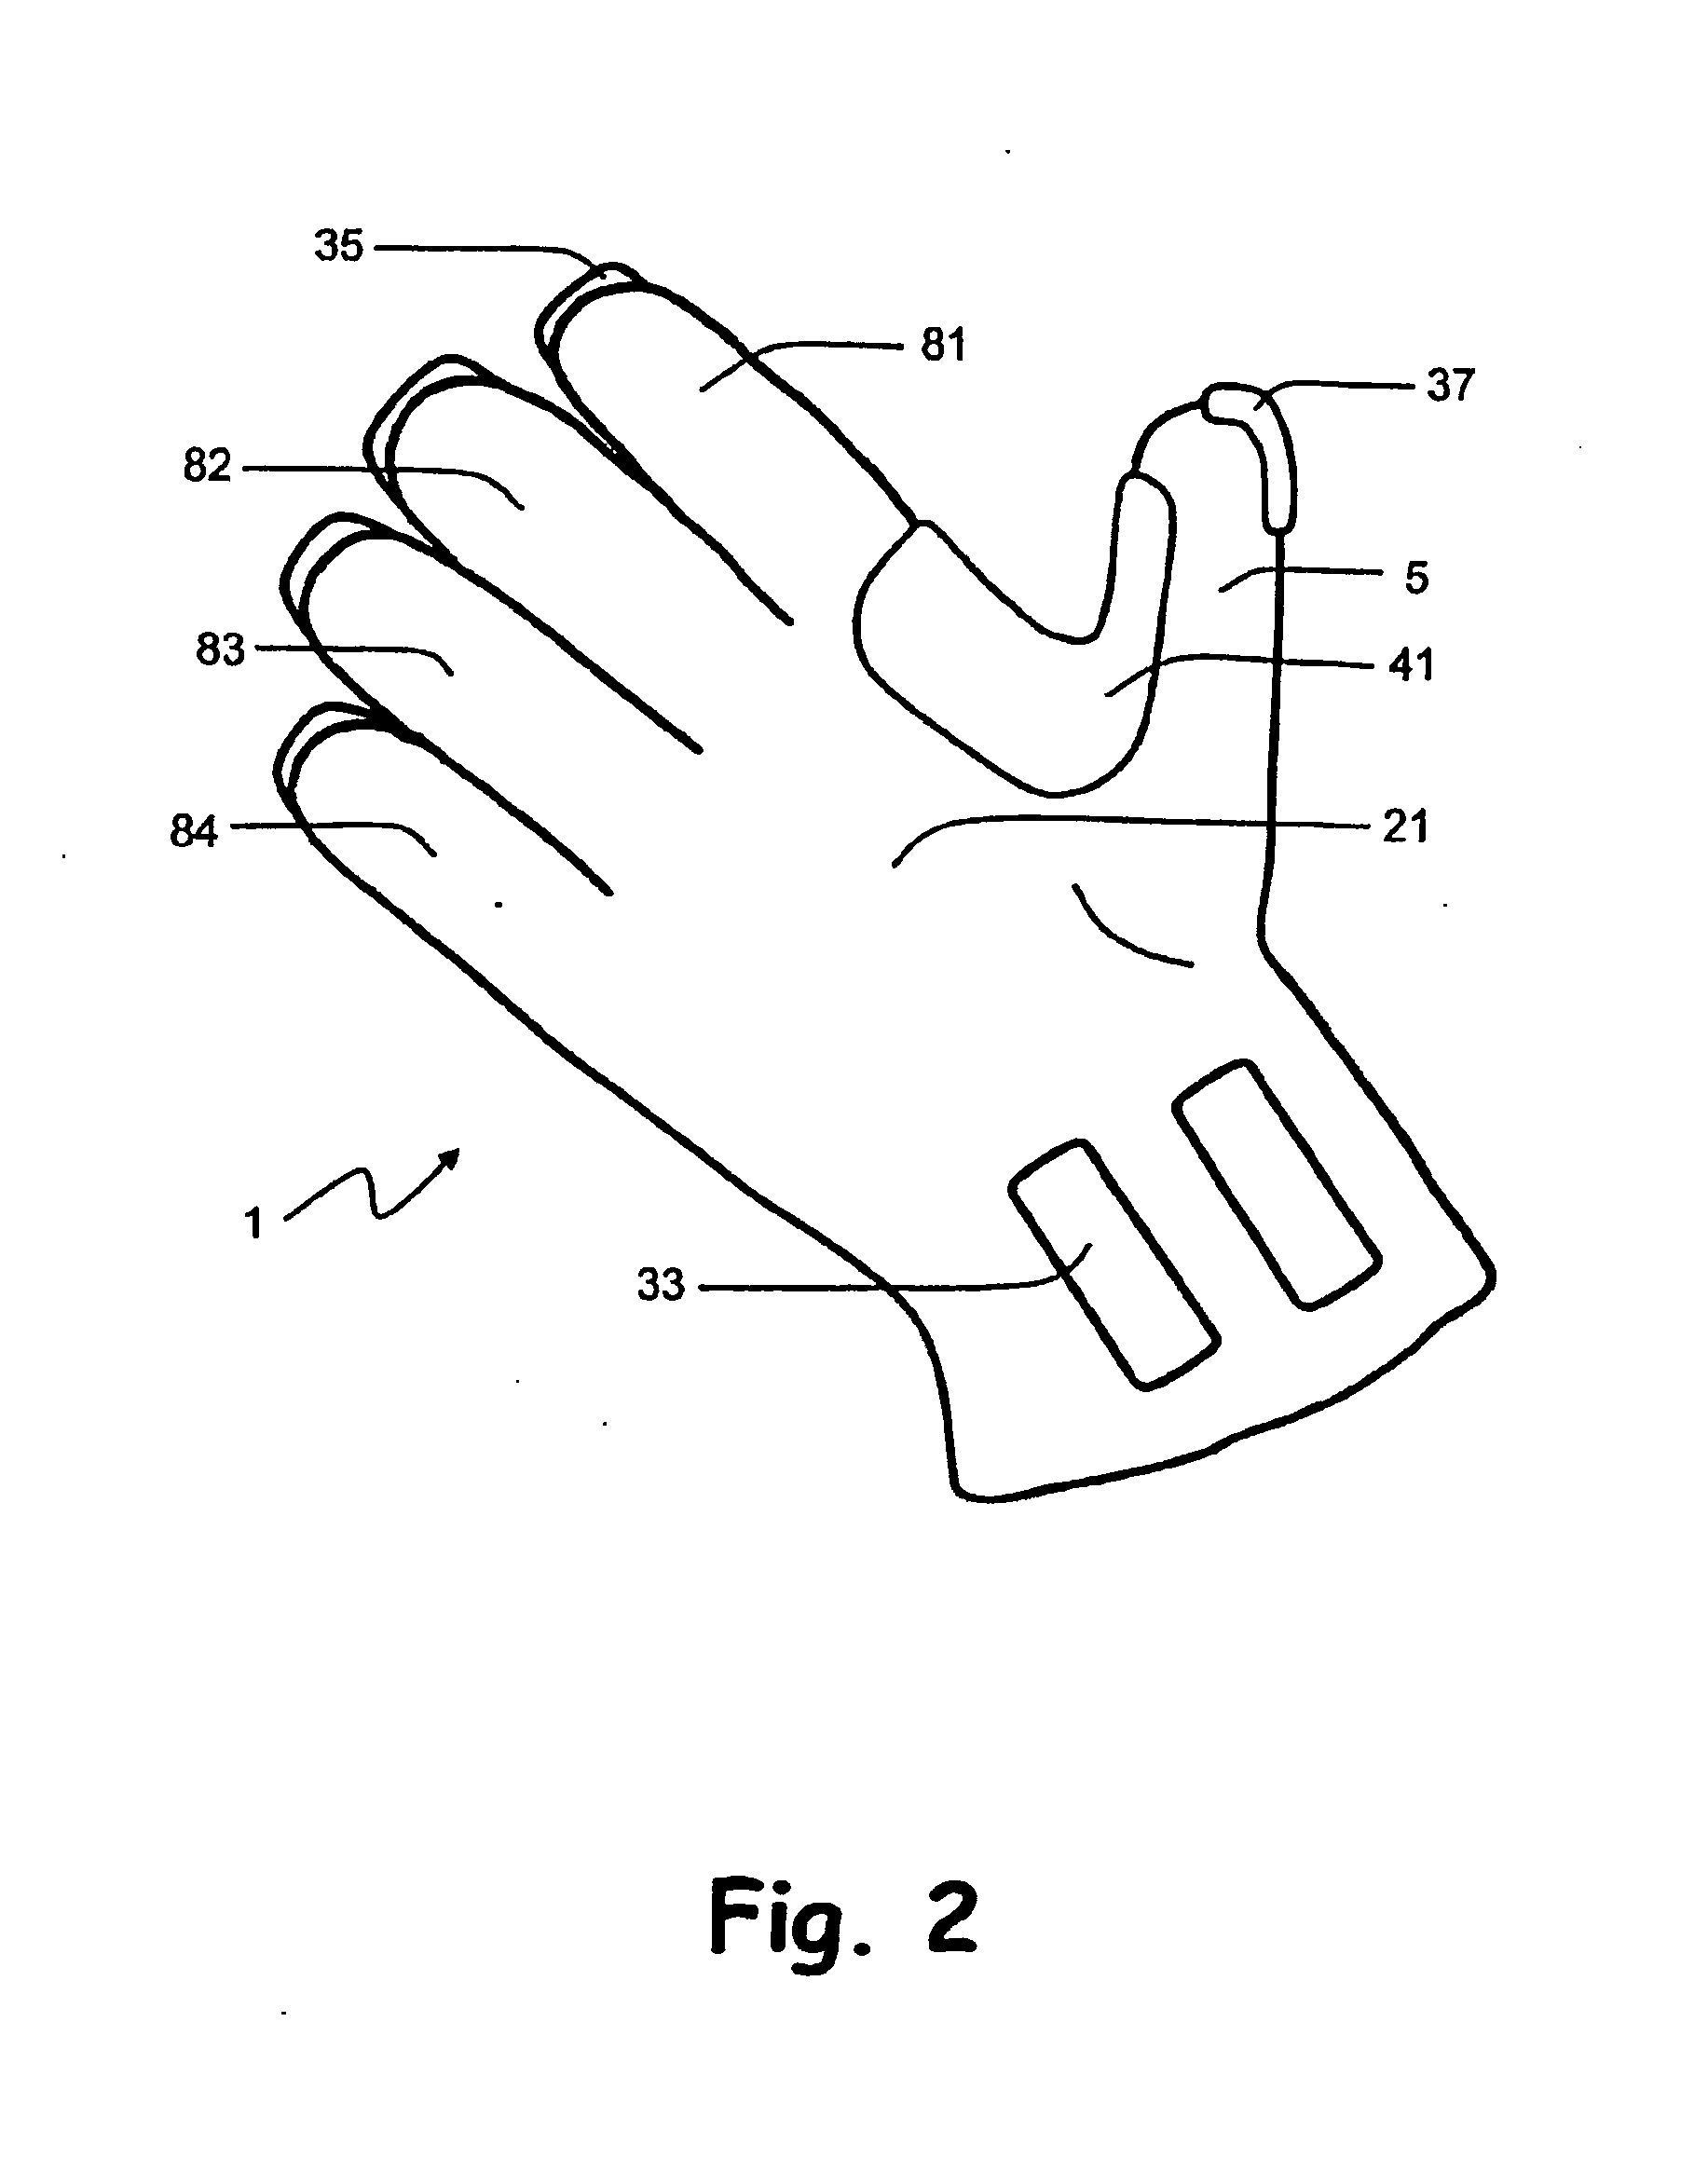 Handwear incorporating attachment element